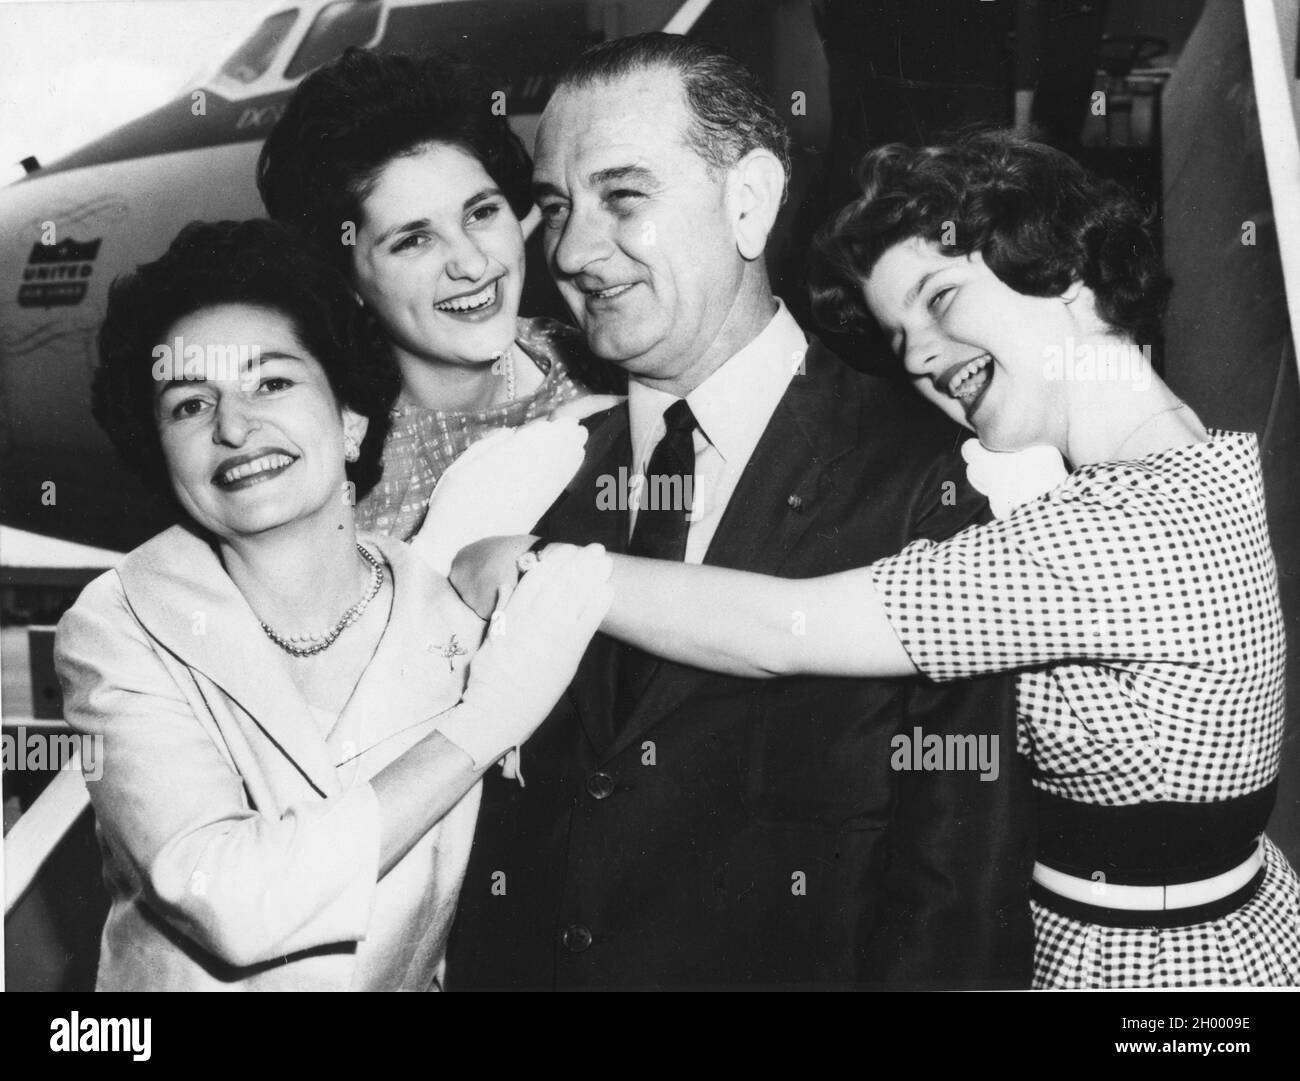 Il senatore Lyndon B. Johnson è abbracciato da sua moglie, Lady Bird (a sinistra) e dalle loro figlie Lynda (a sinistra) e Lucy (a destra). I Johnsons erano in viaggio verso la Convenzione Democratica di Los Angeles. 7-7-60. Foto Stock